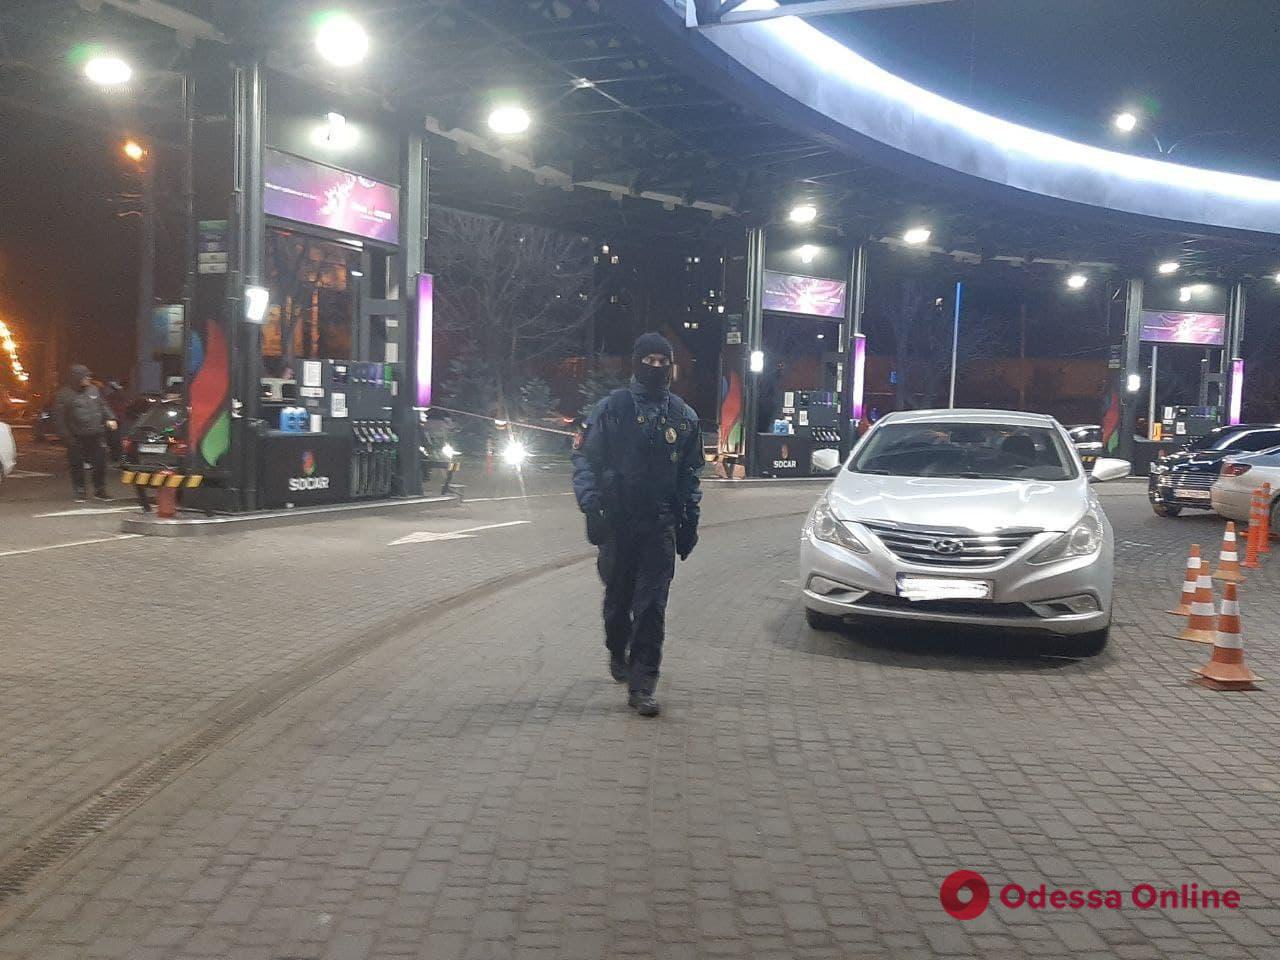 В Одессе на автозаправке произошла стрельба — есть пострадавший (обновляется)